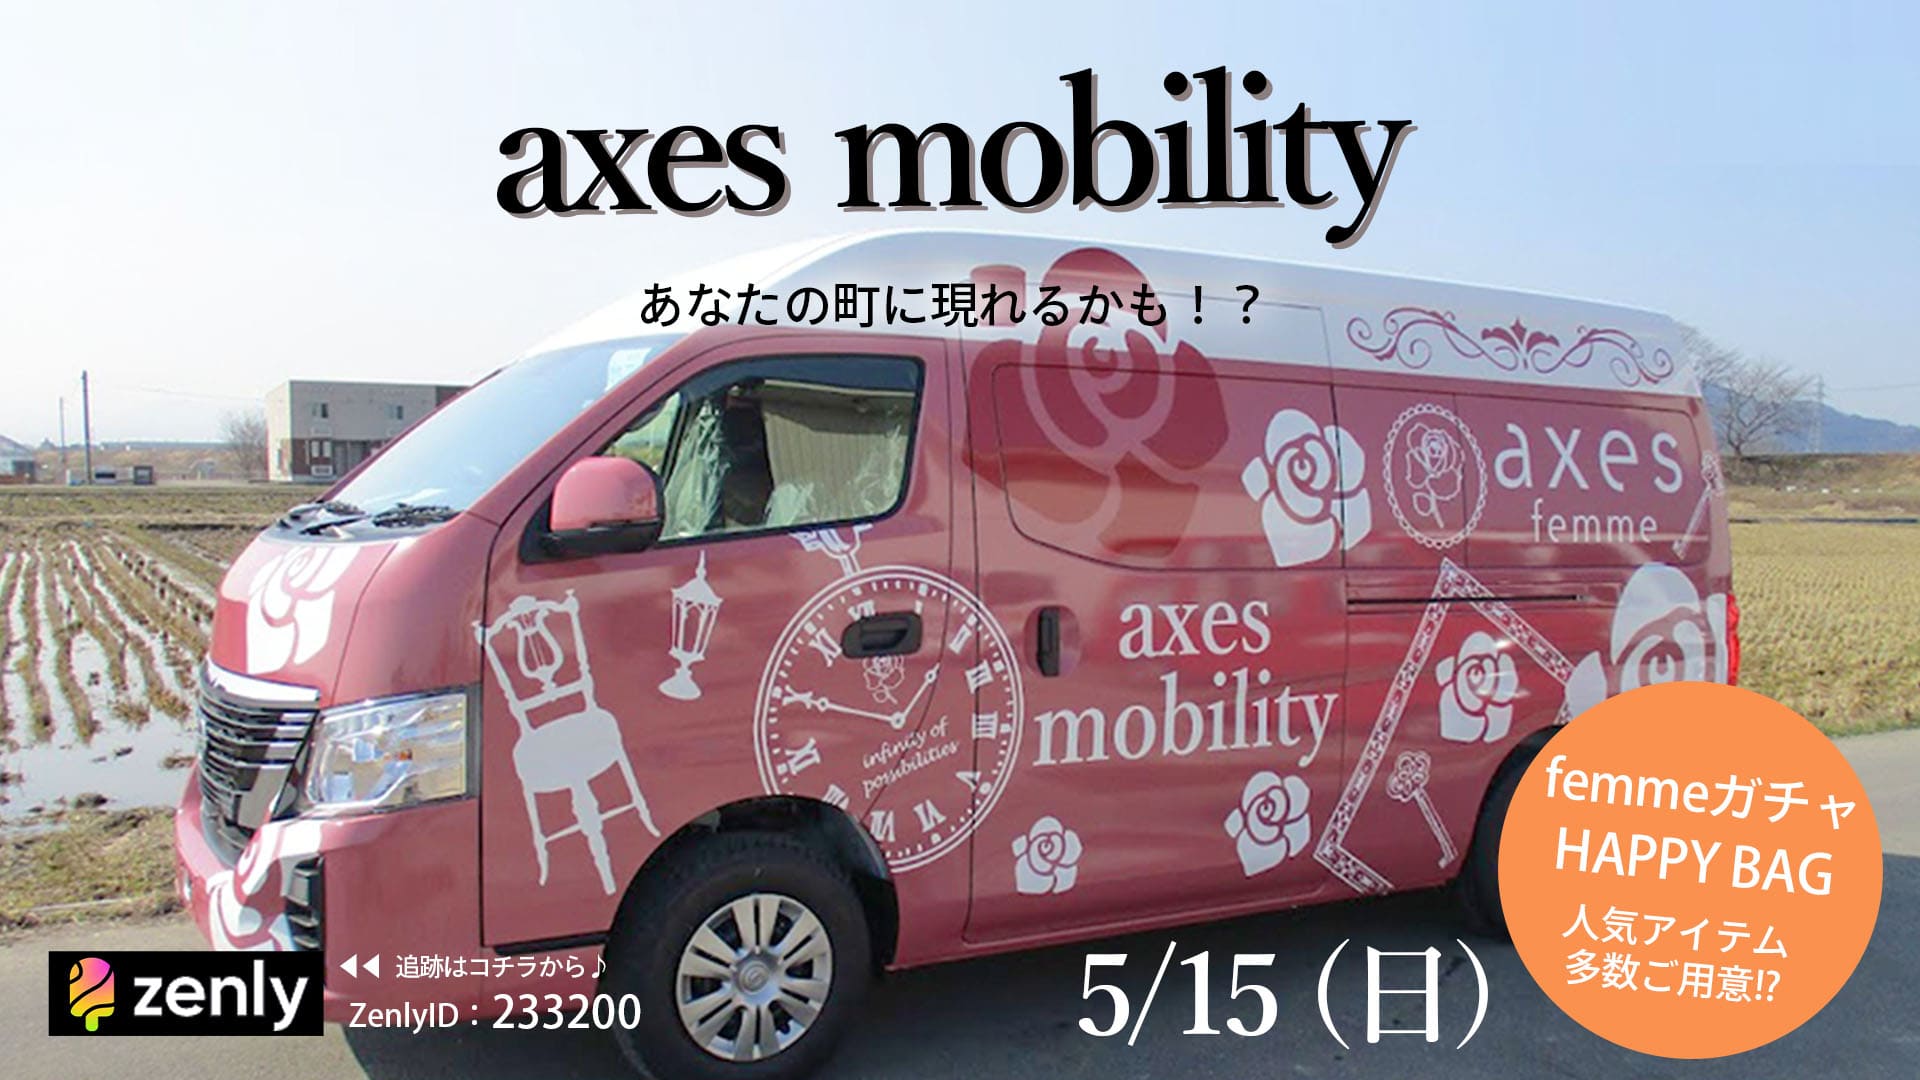 axes mobility